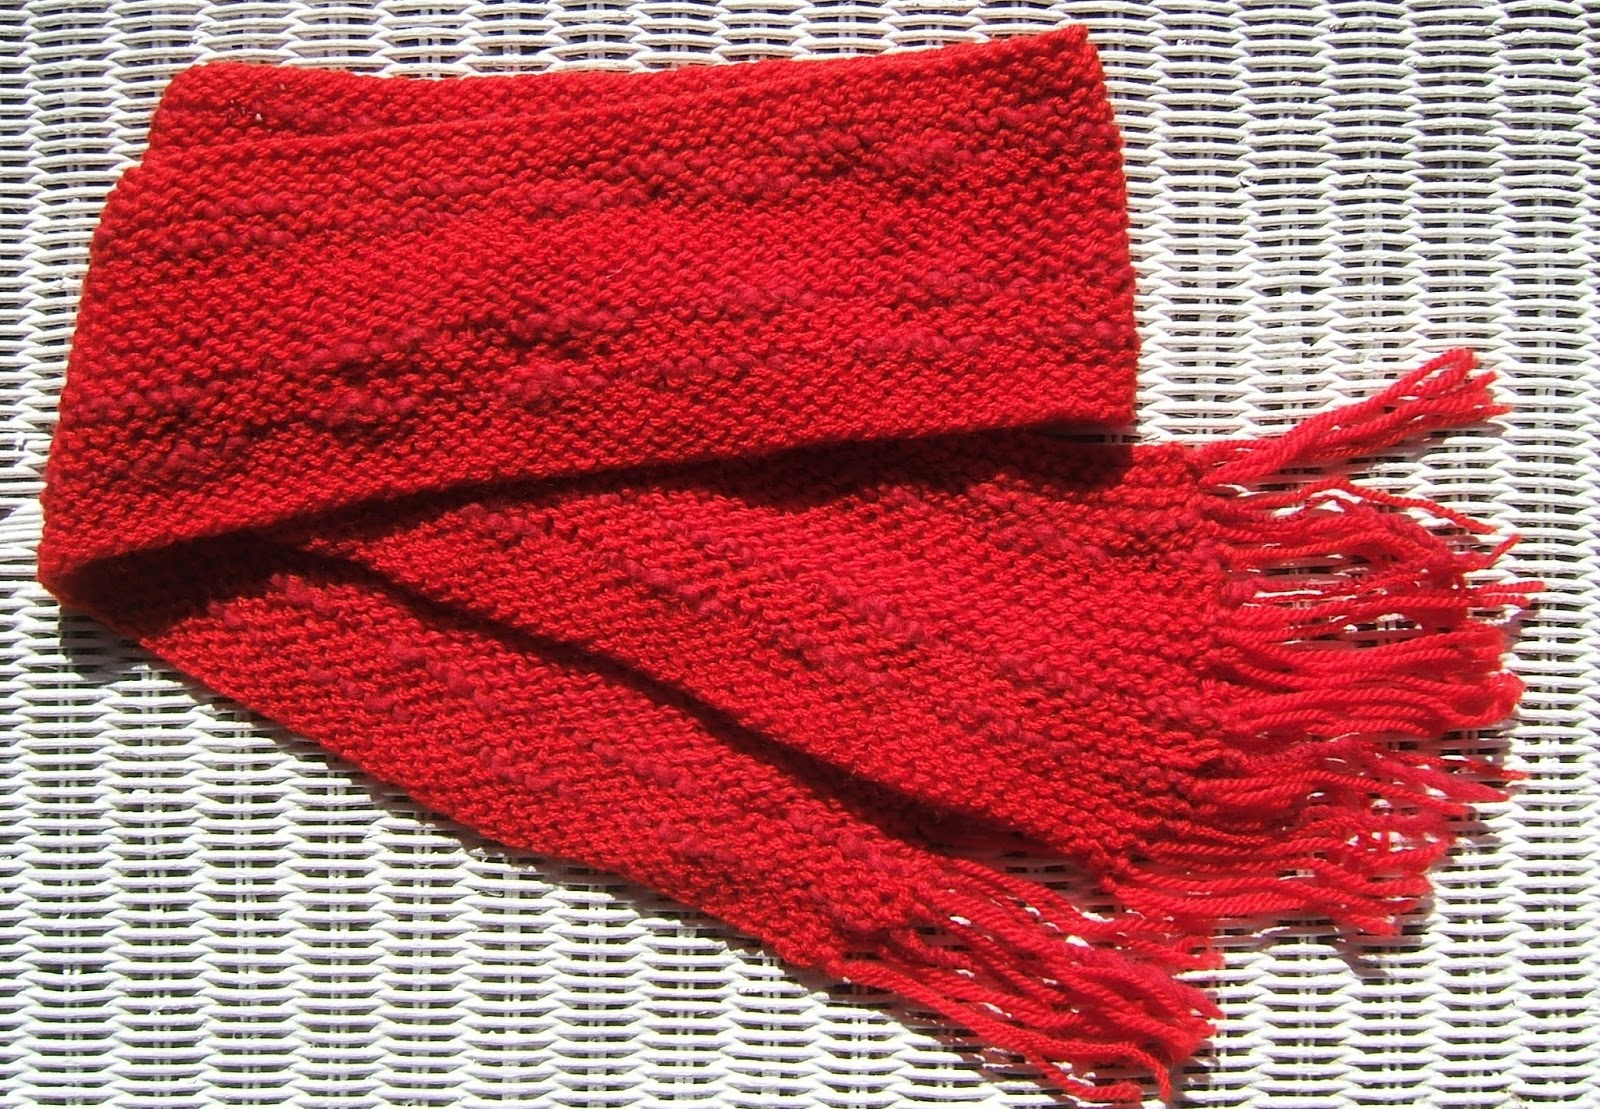 aussie knitting threads: Three birthdays